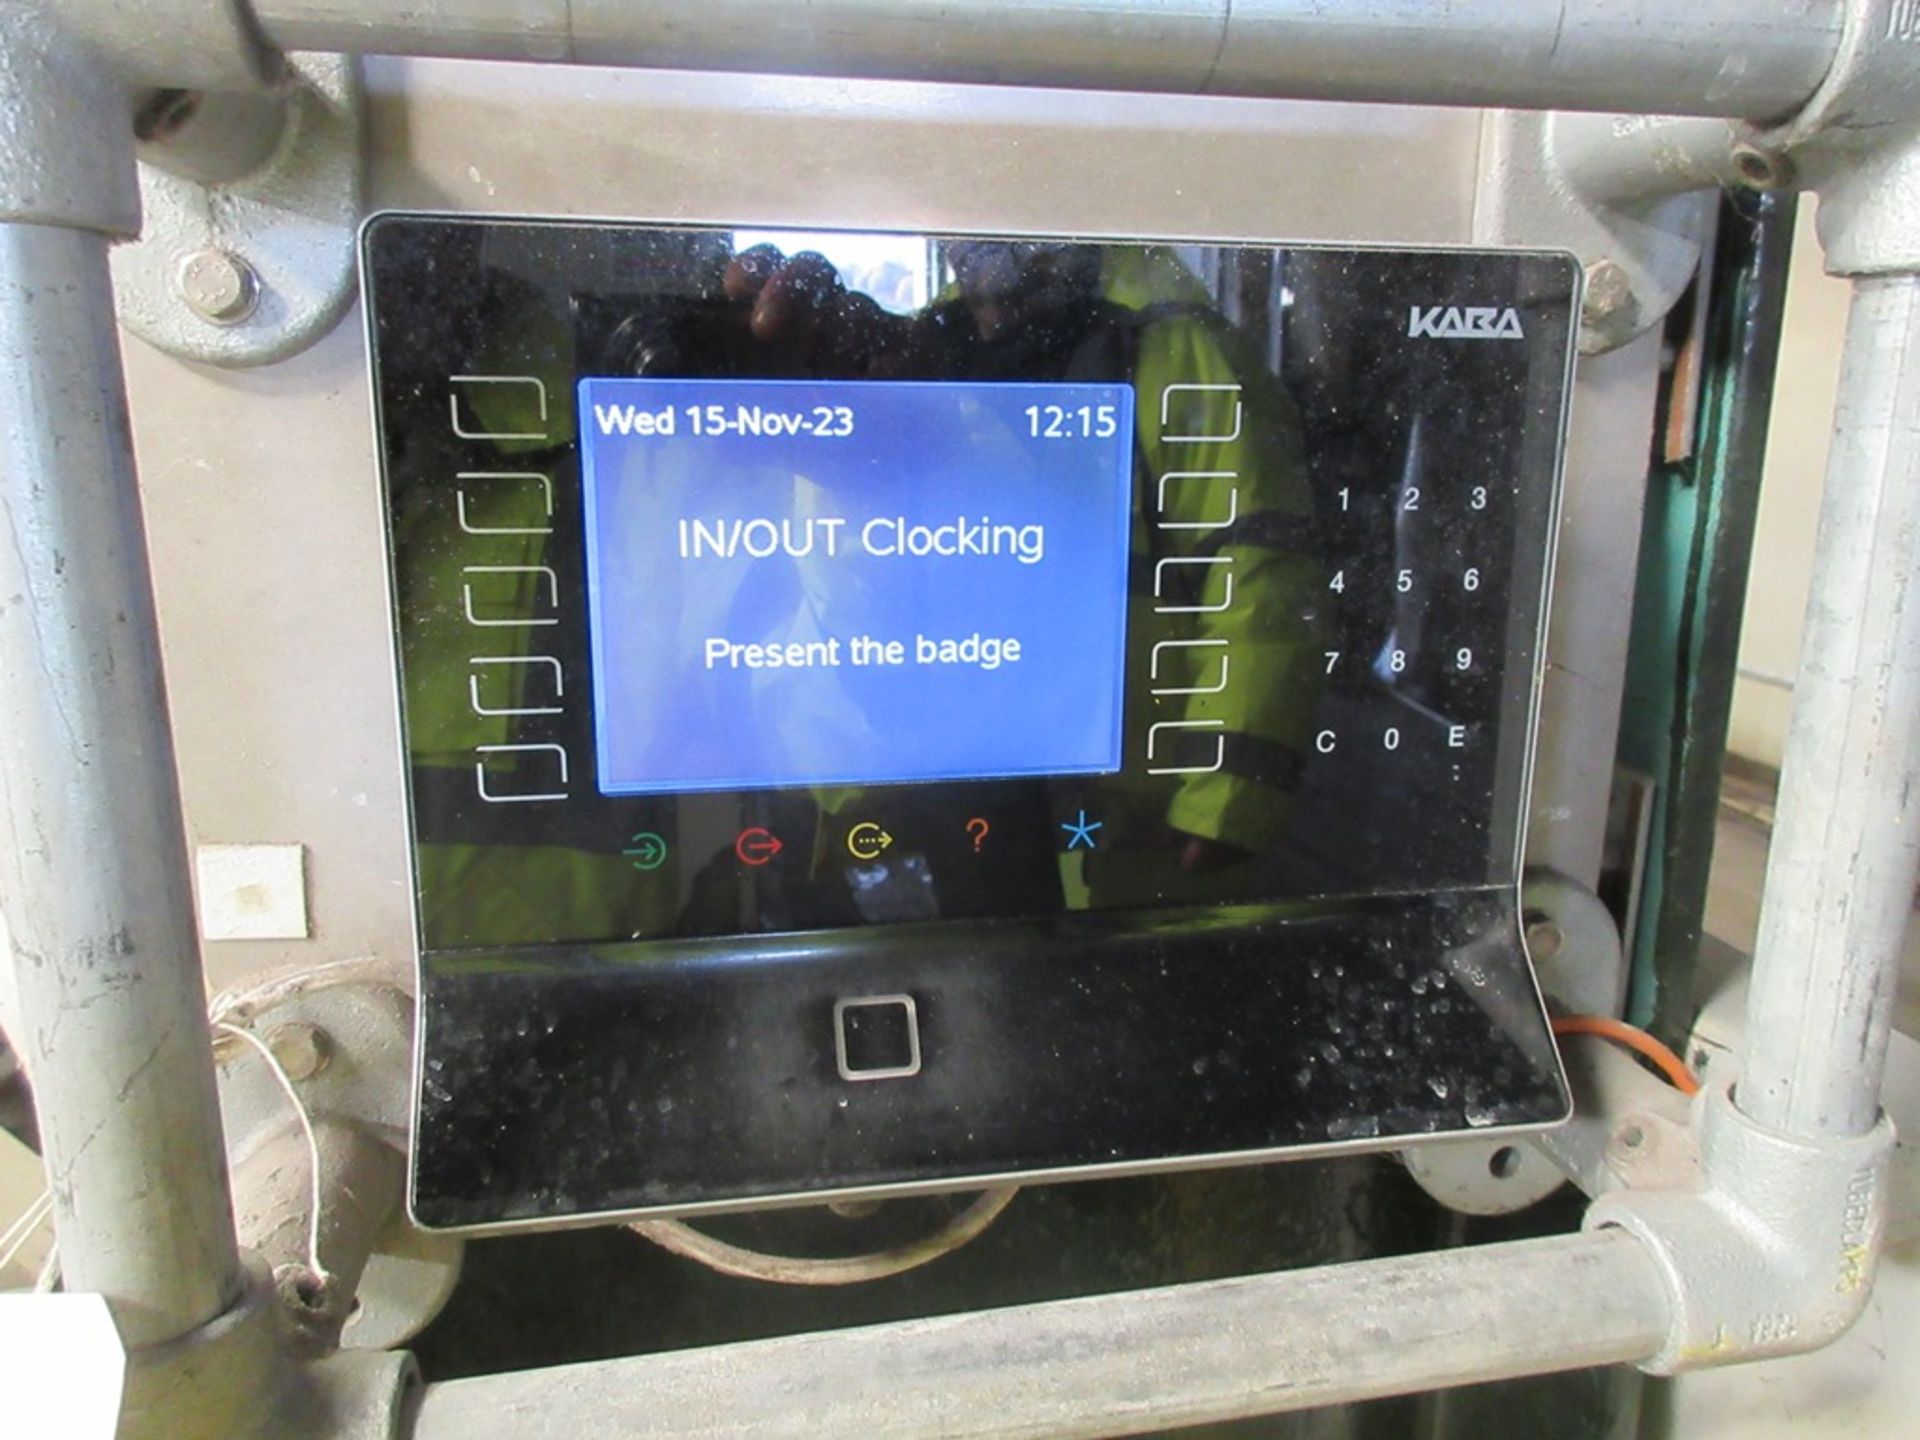 Kara wall mounted digital clocking in/out machine